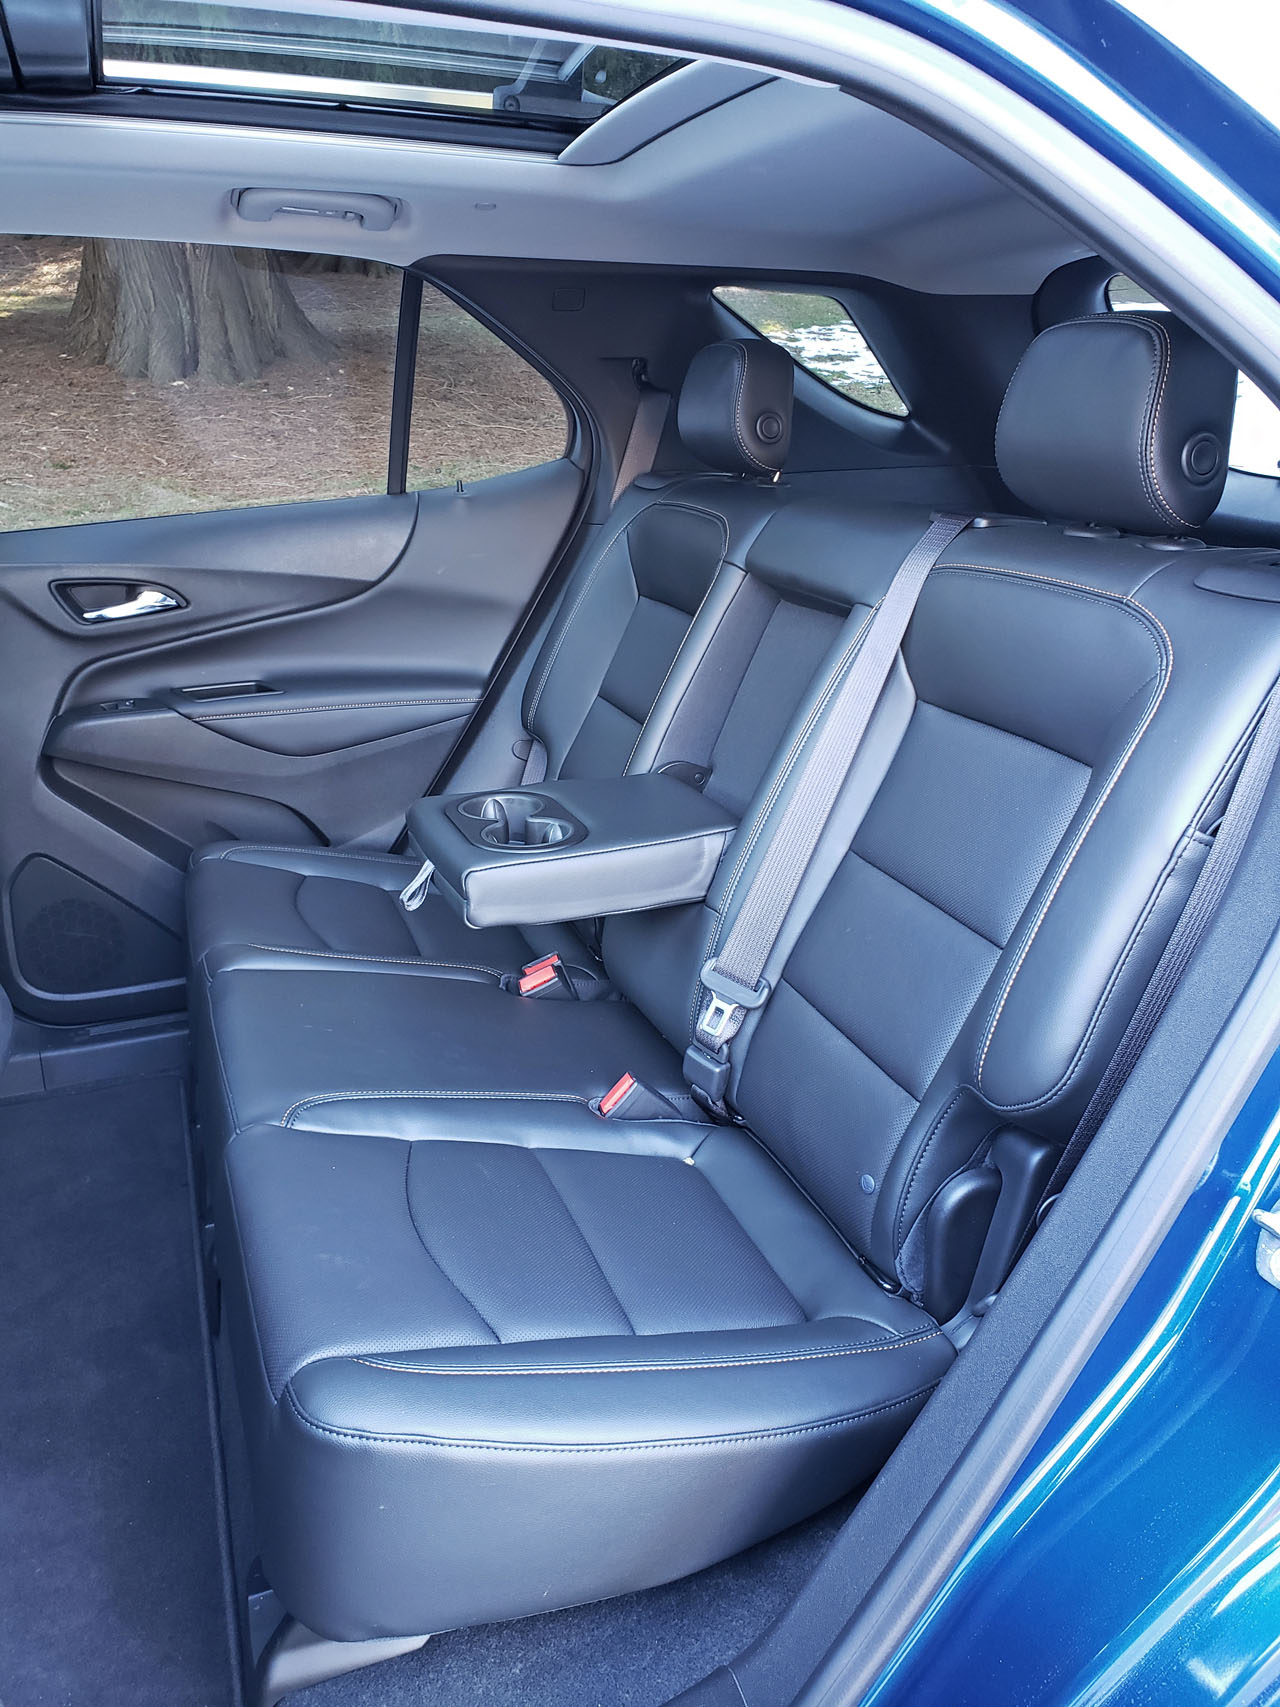 2019 Chevrolet Equinox AWD Premier Review | The Car Magazine